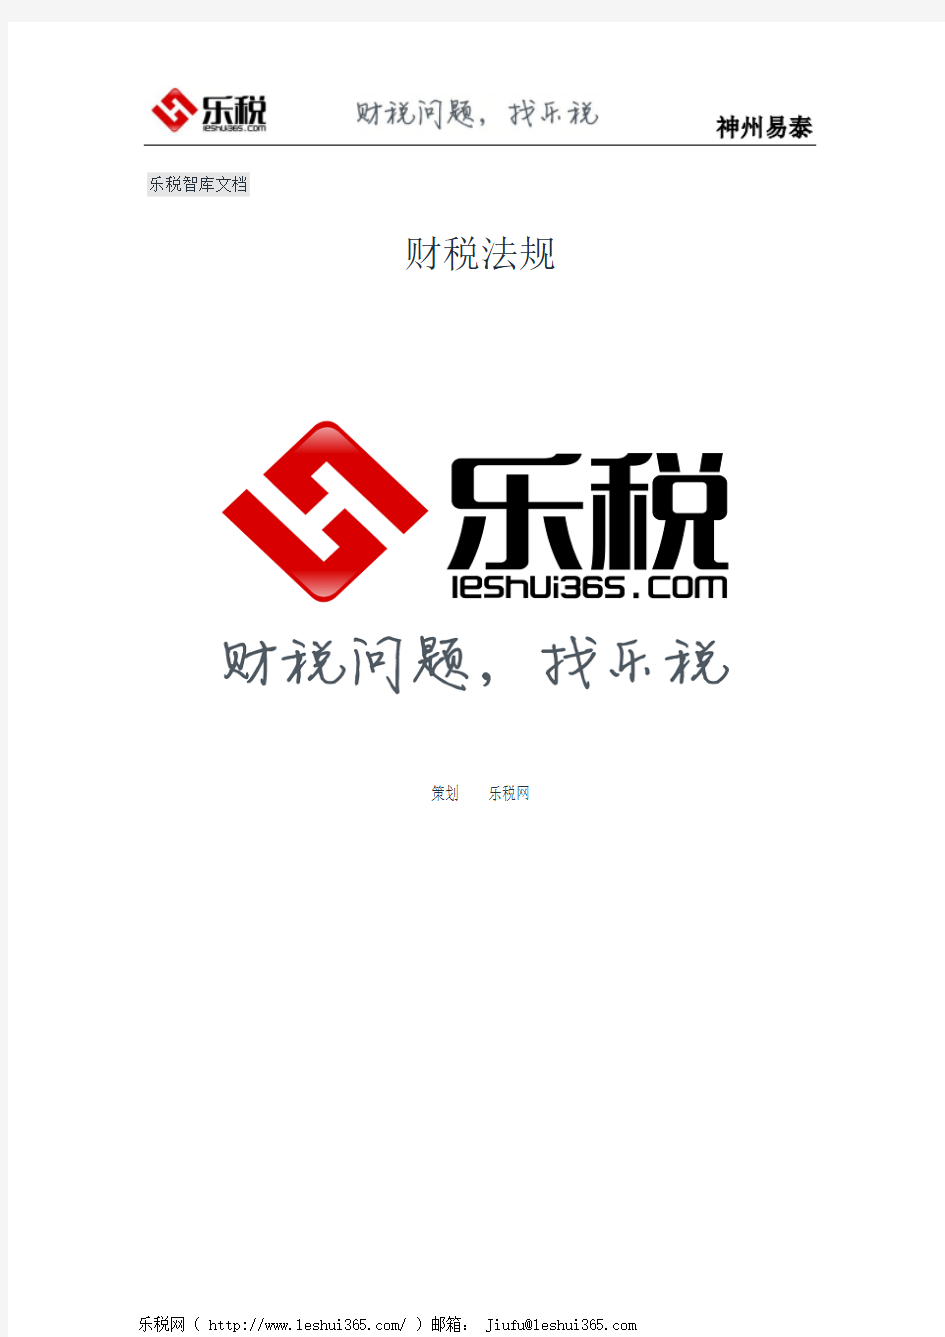 上海市国家税务局上海市地方税务局关于调整本市企业税务登记跨区